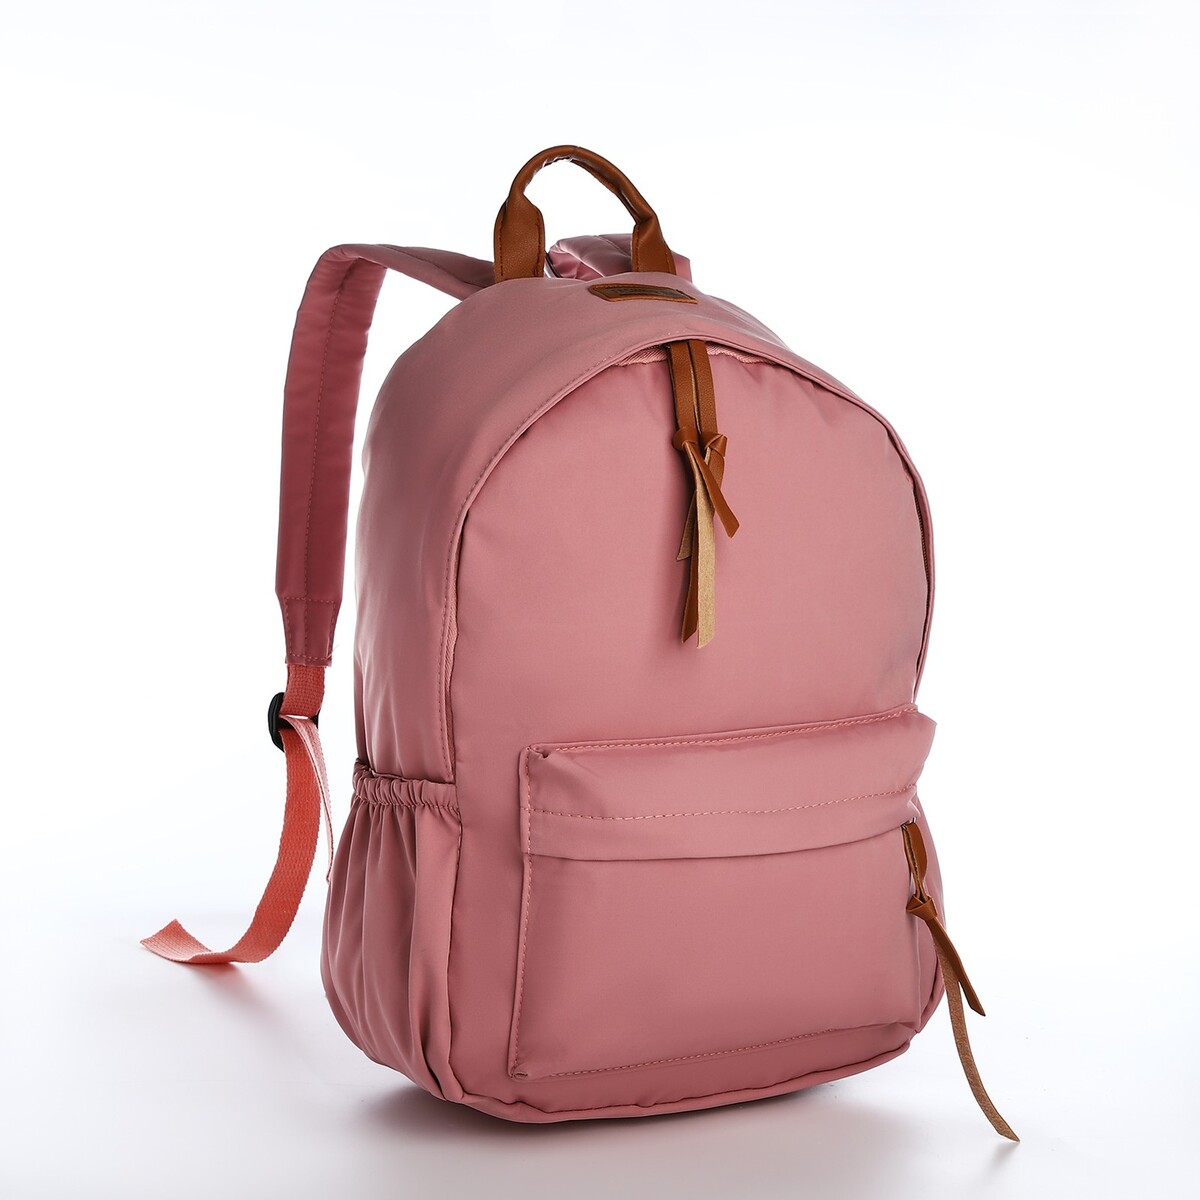 Рюкзак молодежный из текстиля на молнии, 4 кармана, цвет розовый рюкзак молодежный из текстиля 4 кармана розовый